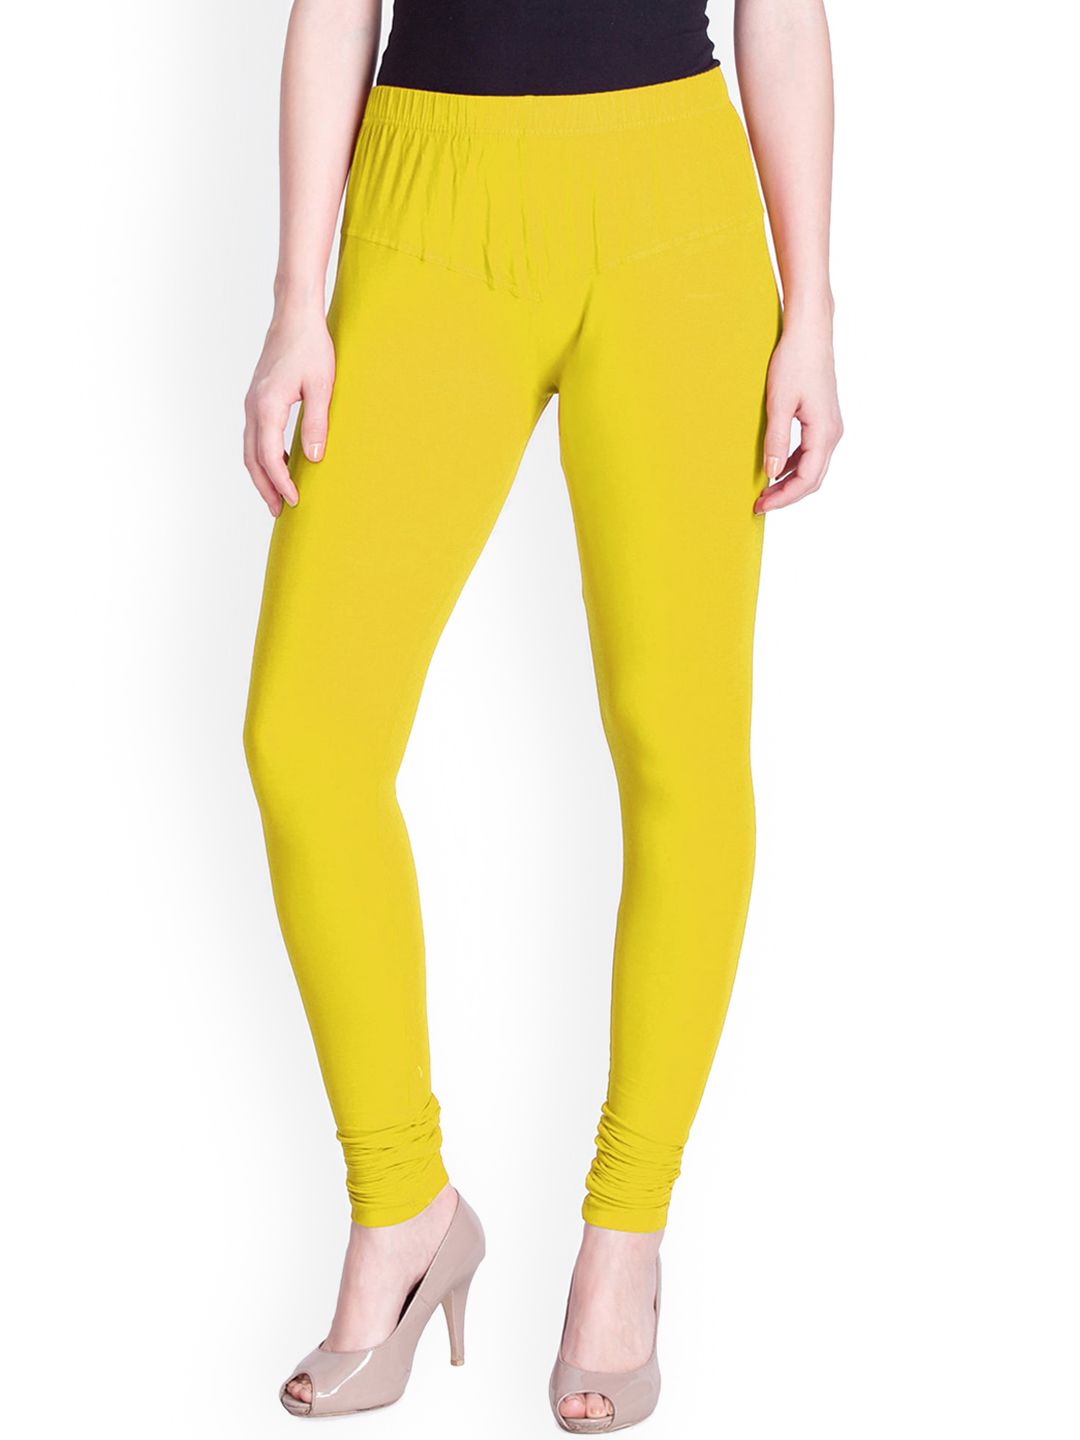 Buy Lyra Green Cotton Full Length Leggings for Women Online @ Tata CLiQ